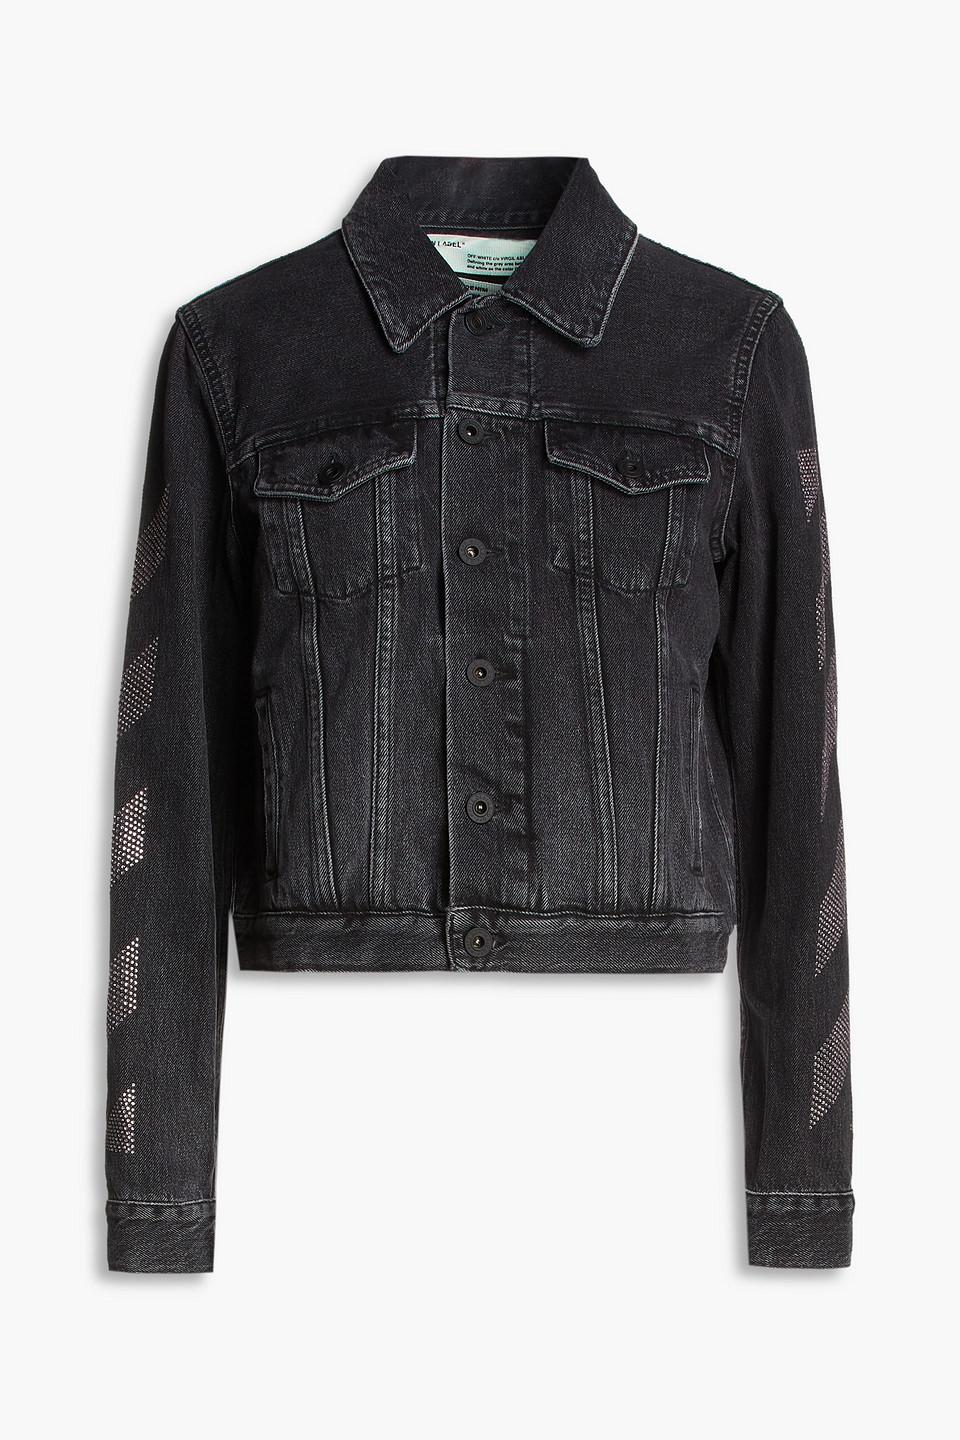 Off-White c/o Virgil Abloh Crystal-embellished Denim Jacket in Black ...